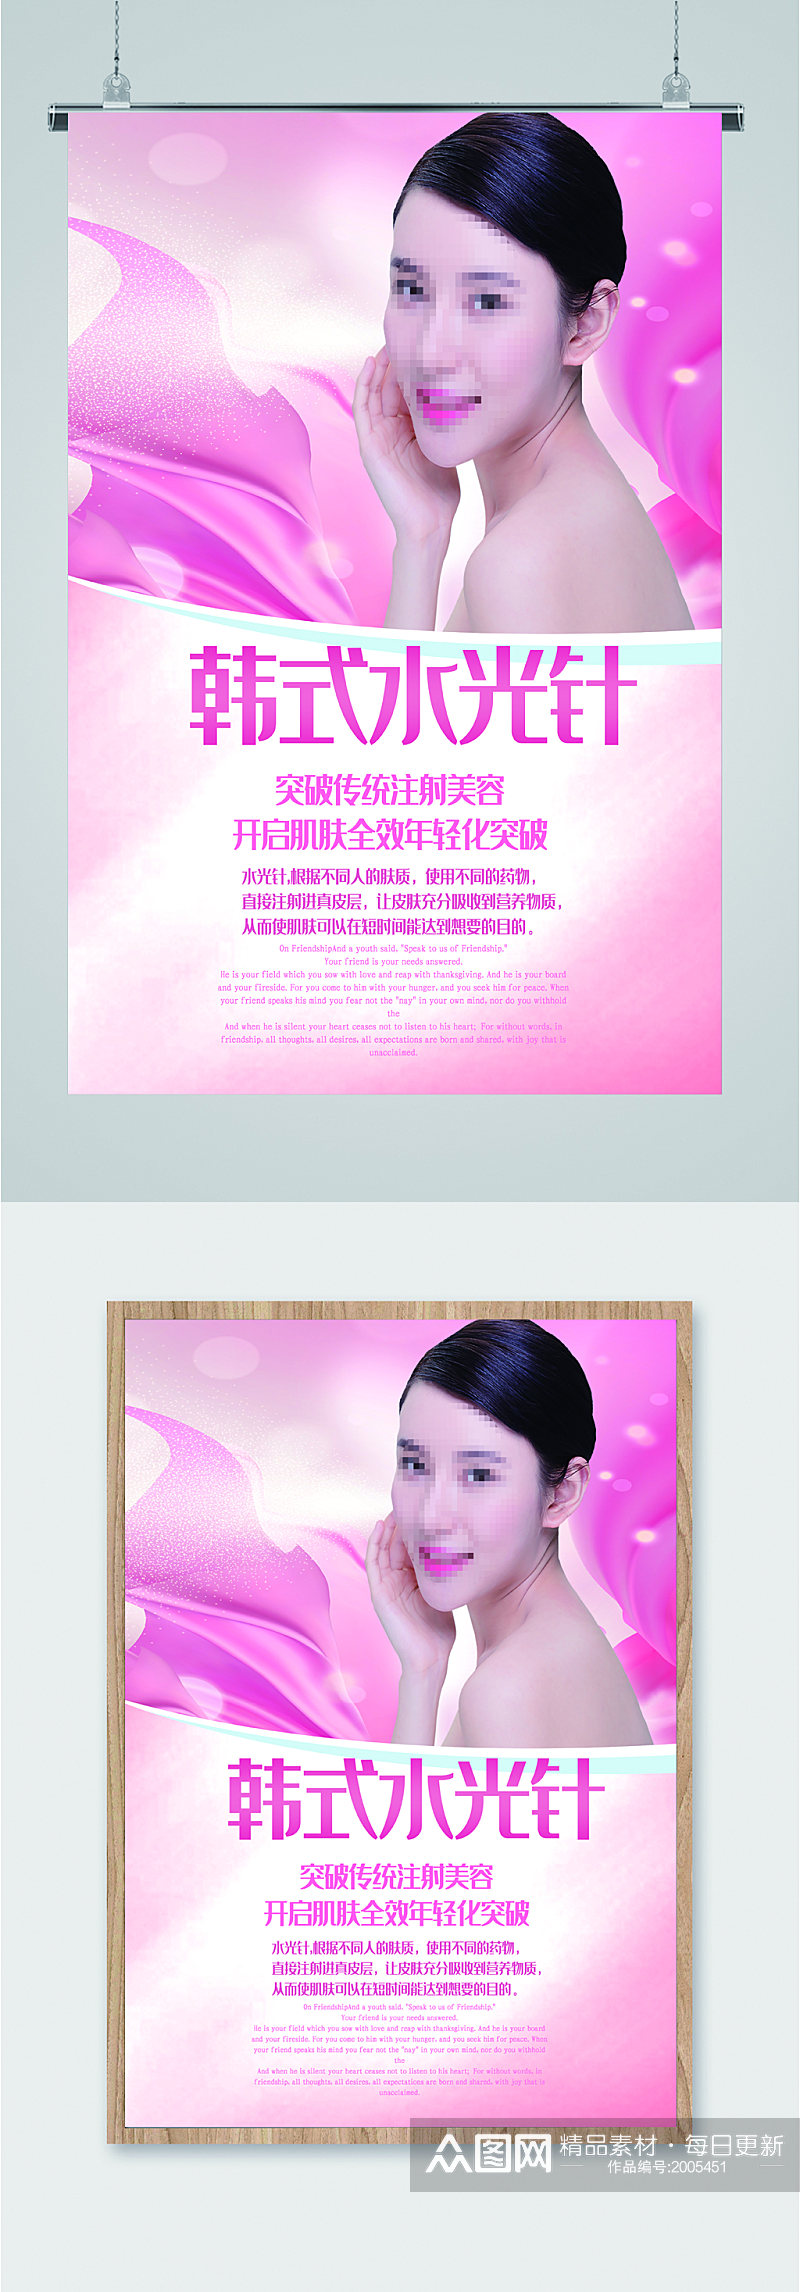 韩式水光针化妆宣传海报素材